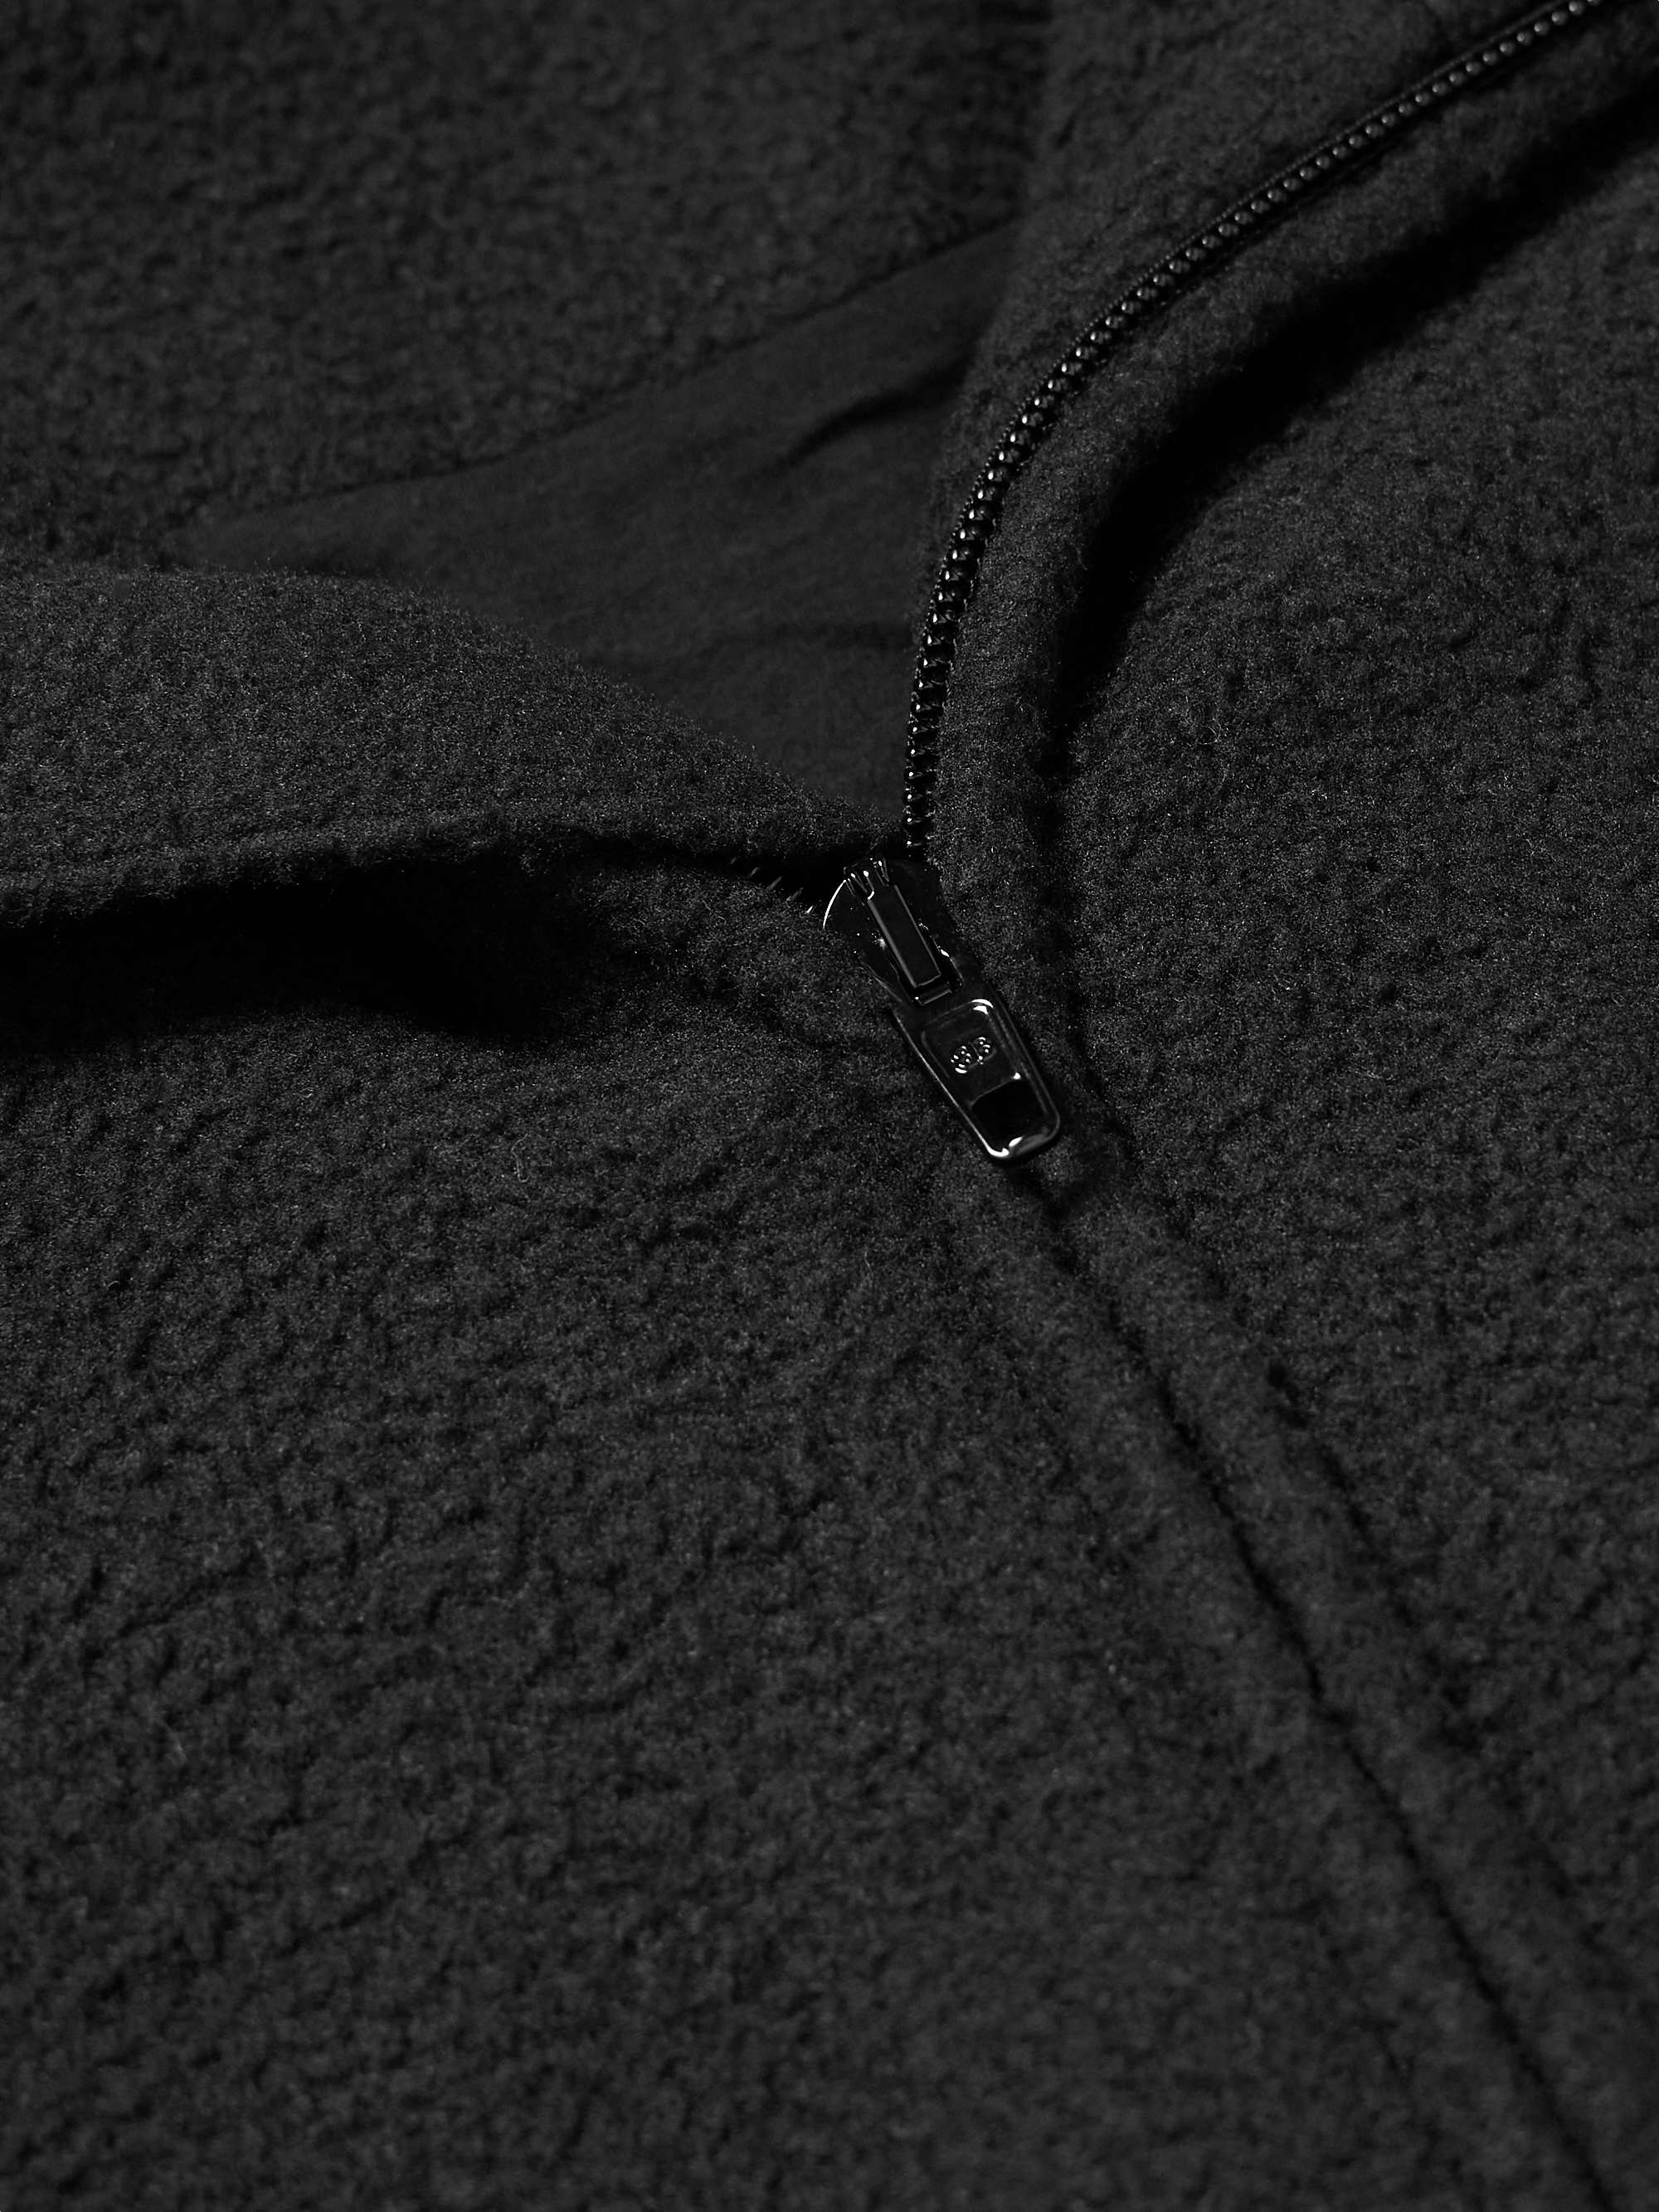 BALENCIAGA Oversized Logo-Embroidered Fleece Jacket for Men | MR PORTER